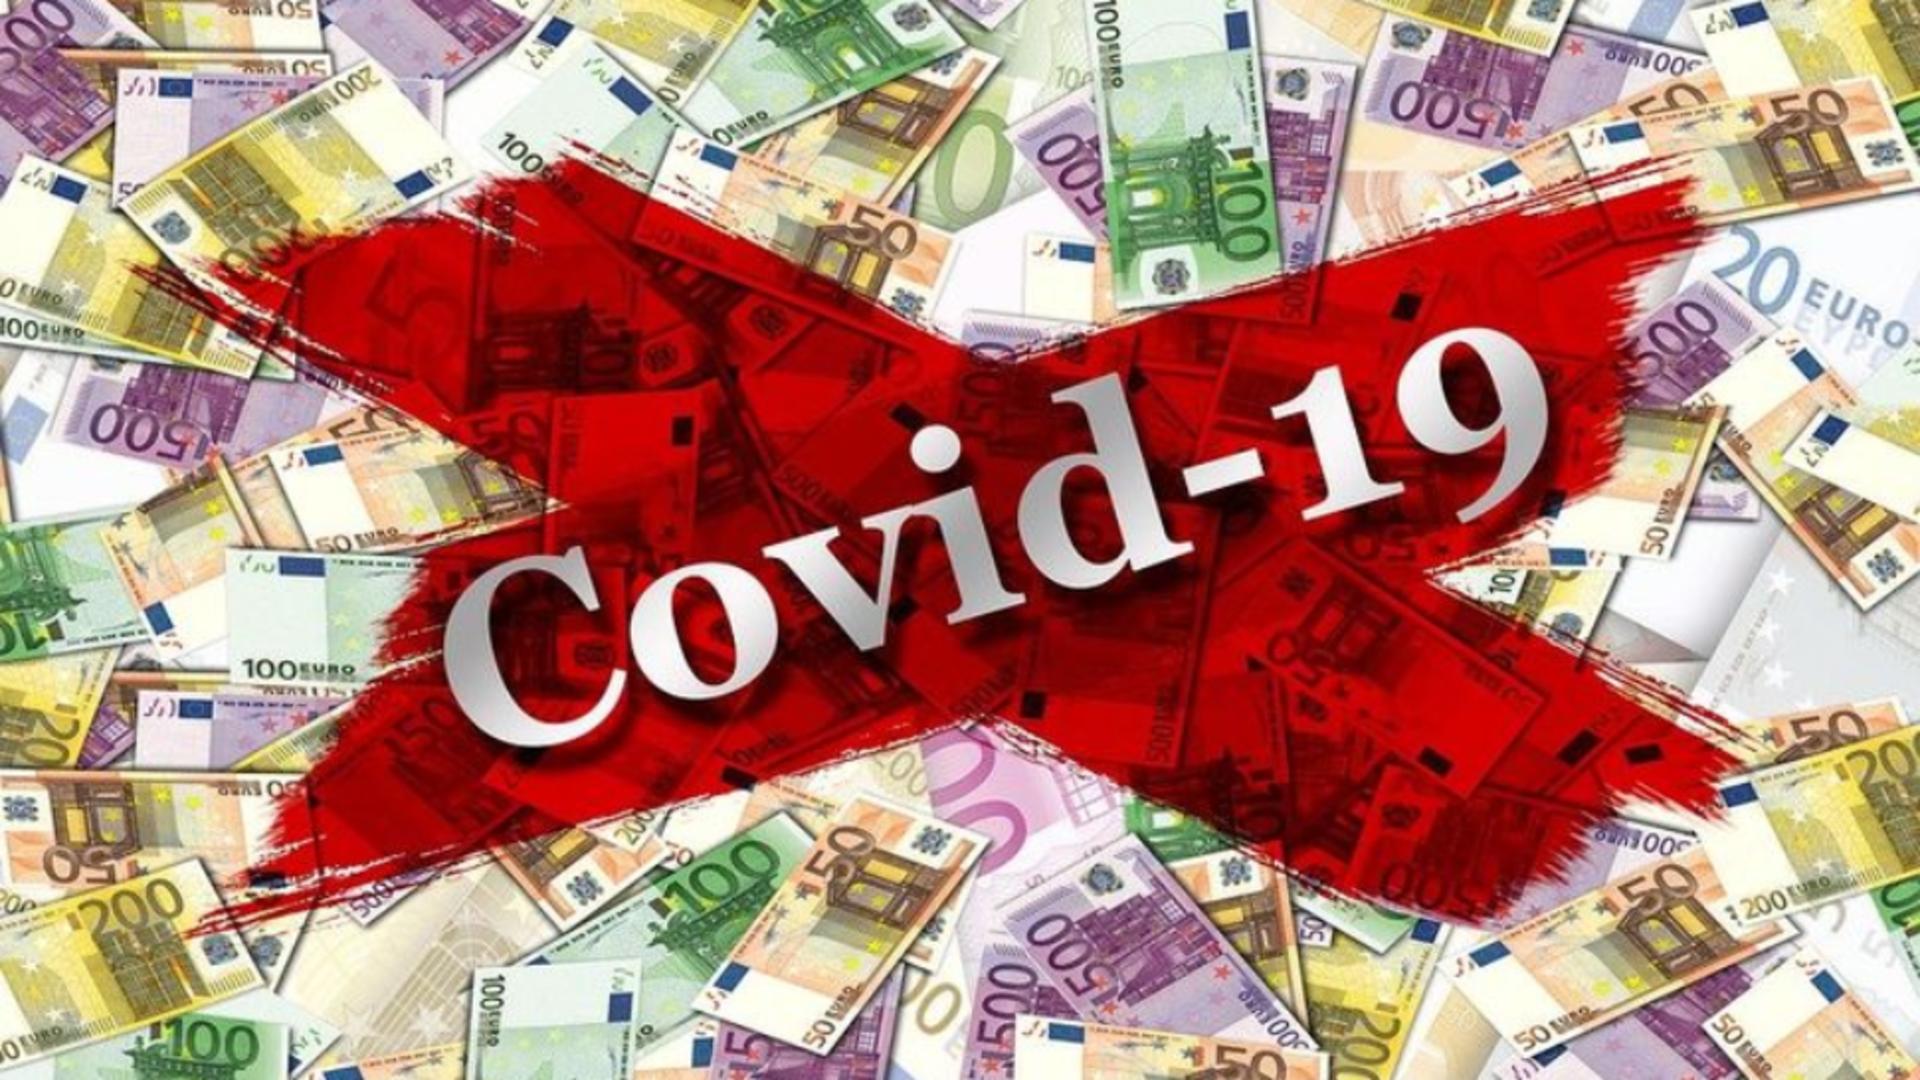 Aproape 40% dintre români spun că au fost afectați financiar de pandemia COVID-19 - Eurobarometru